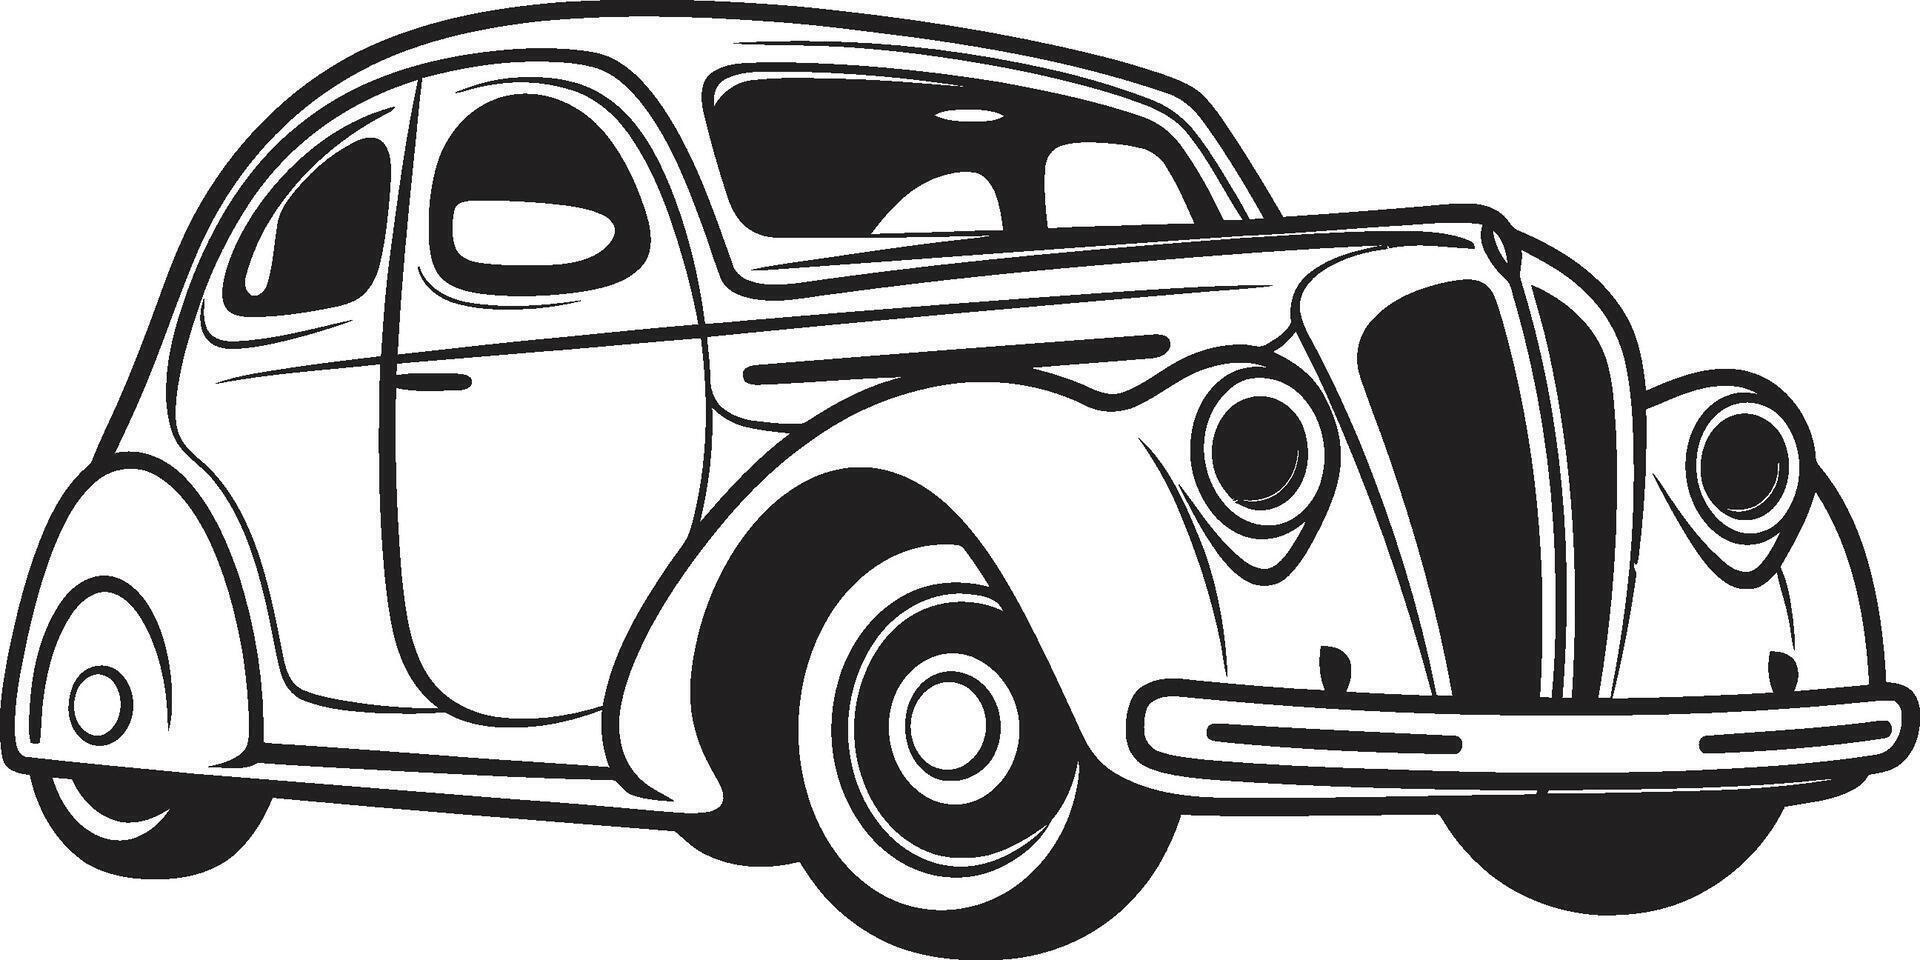 Antiguidade auto adornos rabisco linha arte Tempo honrado transporte ic elemento do vintage carro vetor